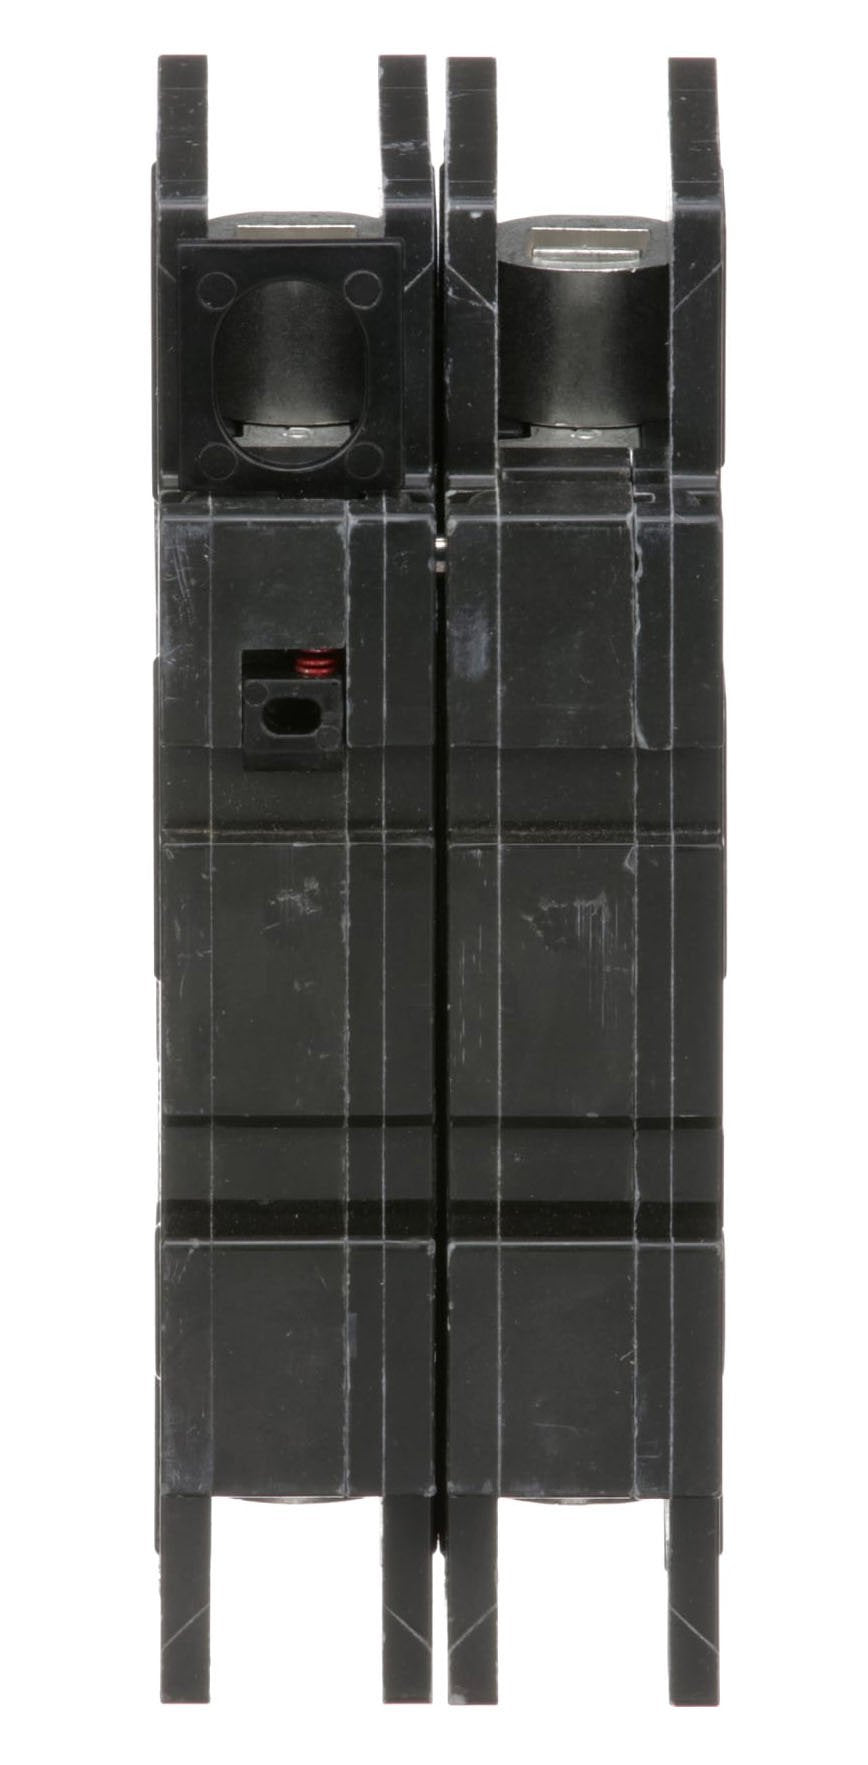 QOU215 - Square D - 15 Amp Circuit Breaker